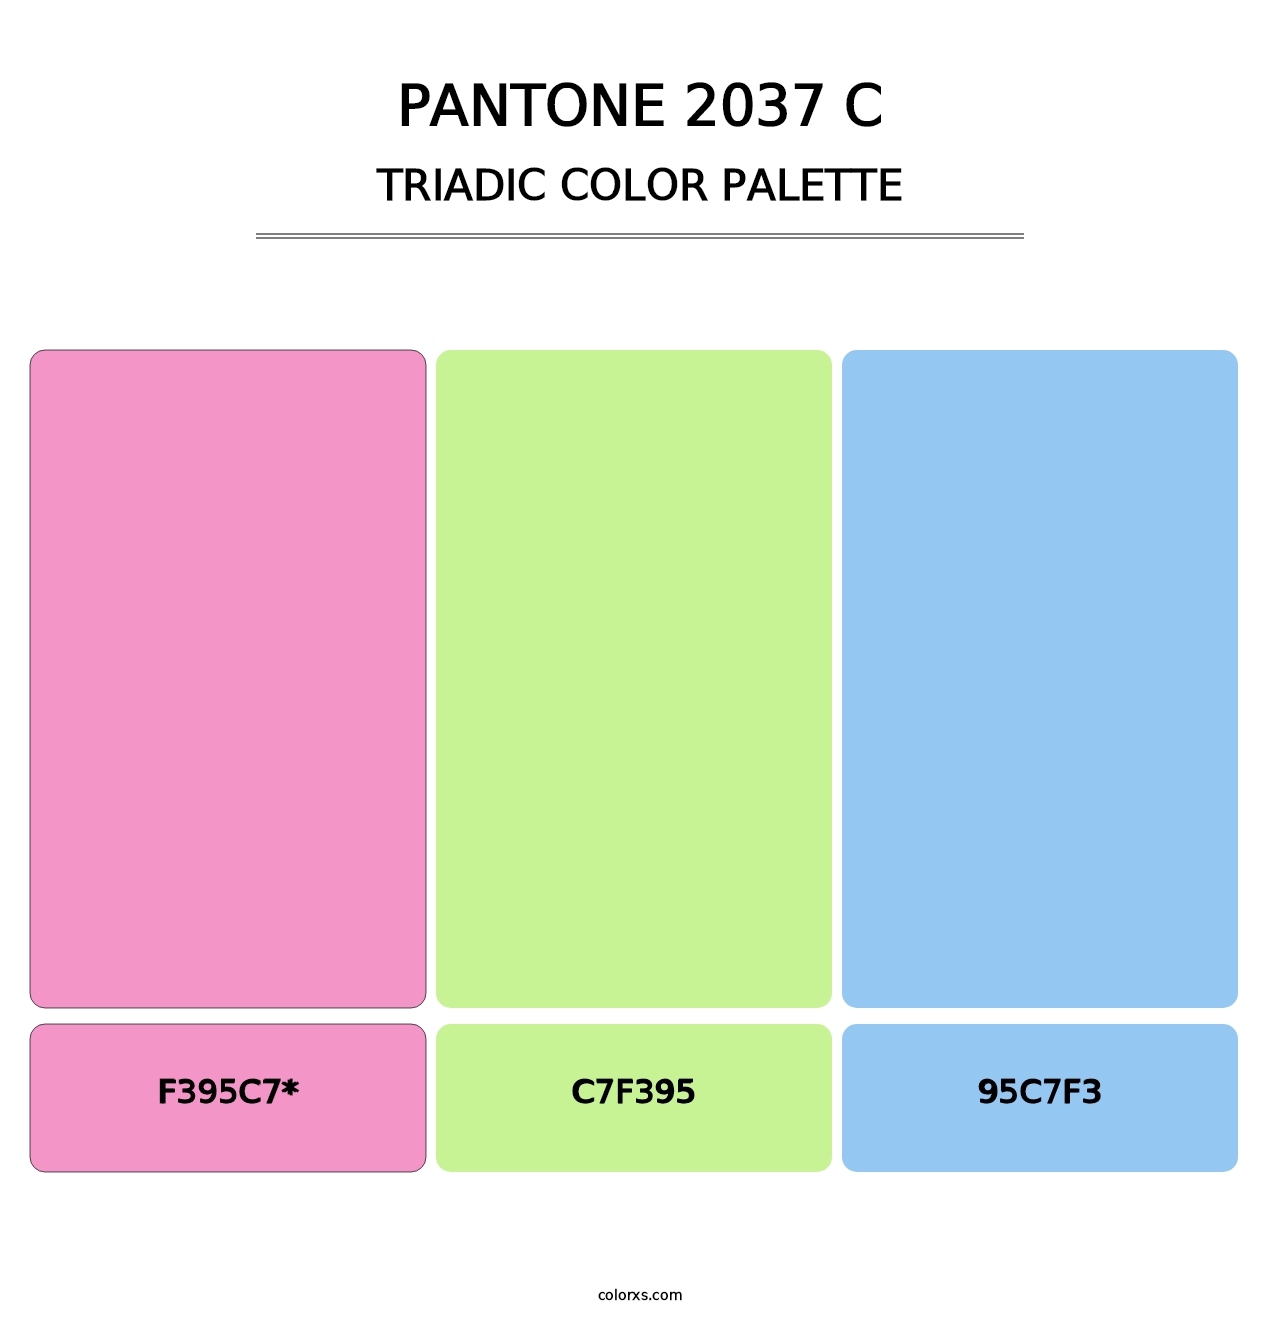 PANTONE 2037 C - Triadic Color Palette